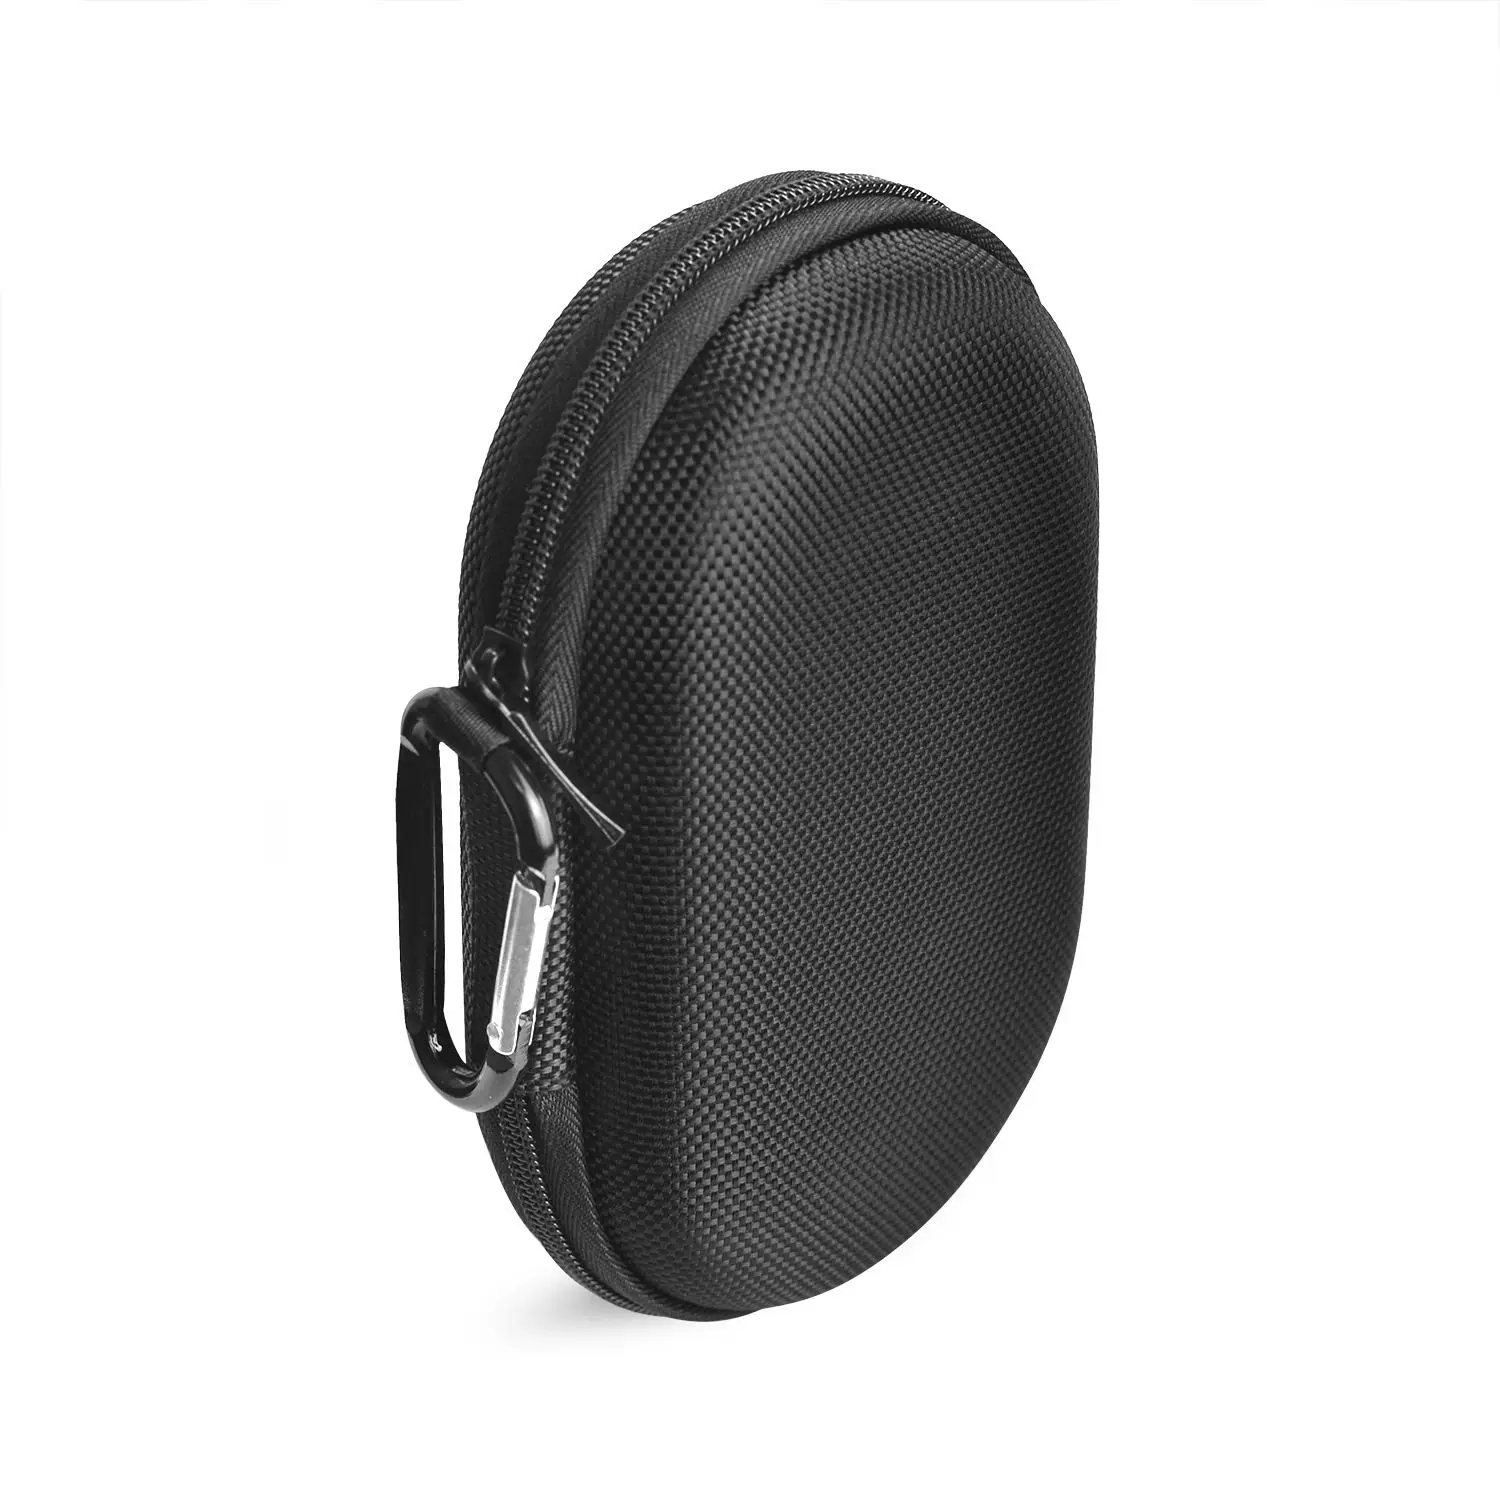 Lgfm-для переноски Чехол для музыкальной колонки коробка чехол сумка чехол для Bang & Olufsen Beoplay P2 Bluetooth динамик. подходит для шнуров